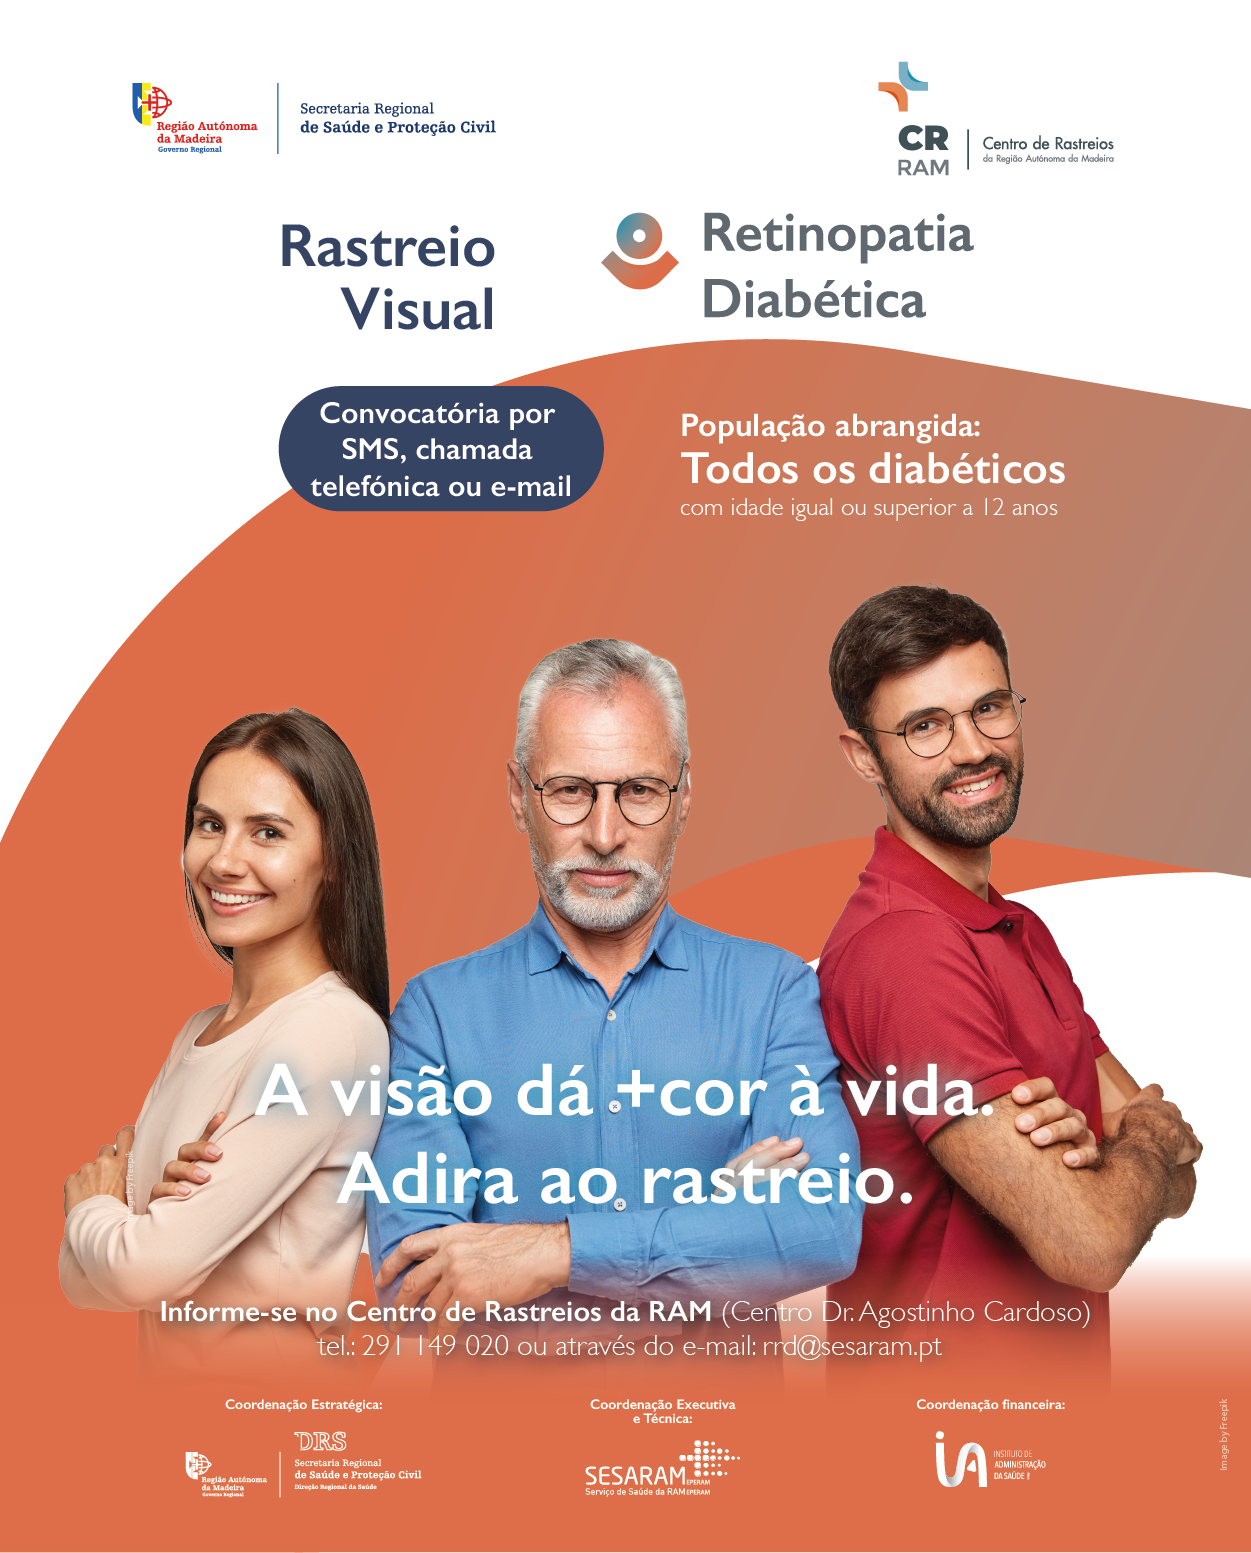 Rastreio Visual Retinopatia Diabética